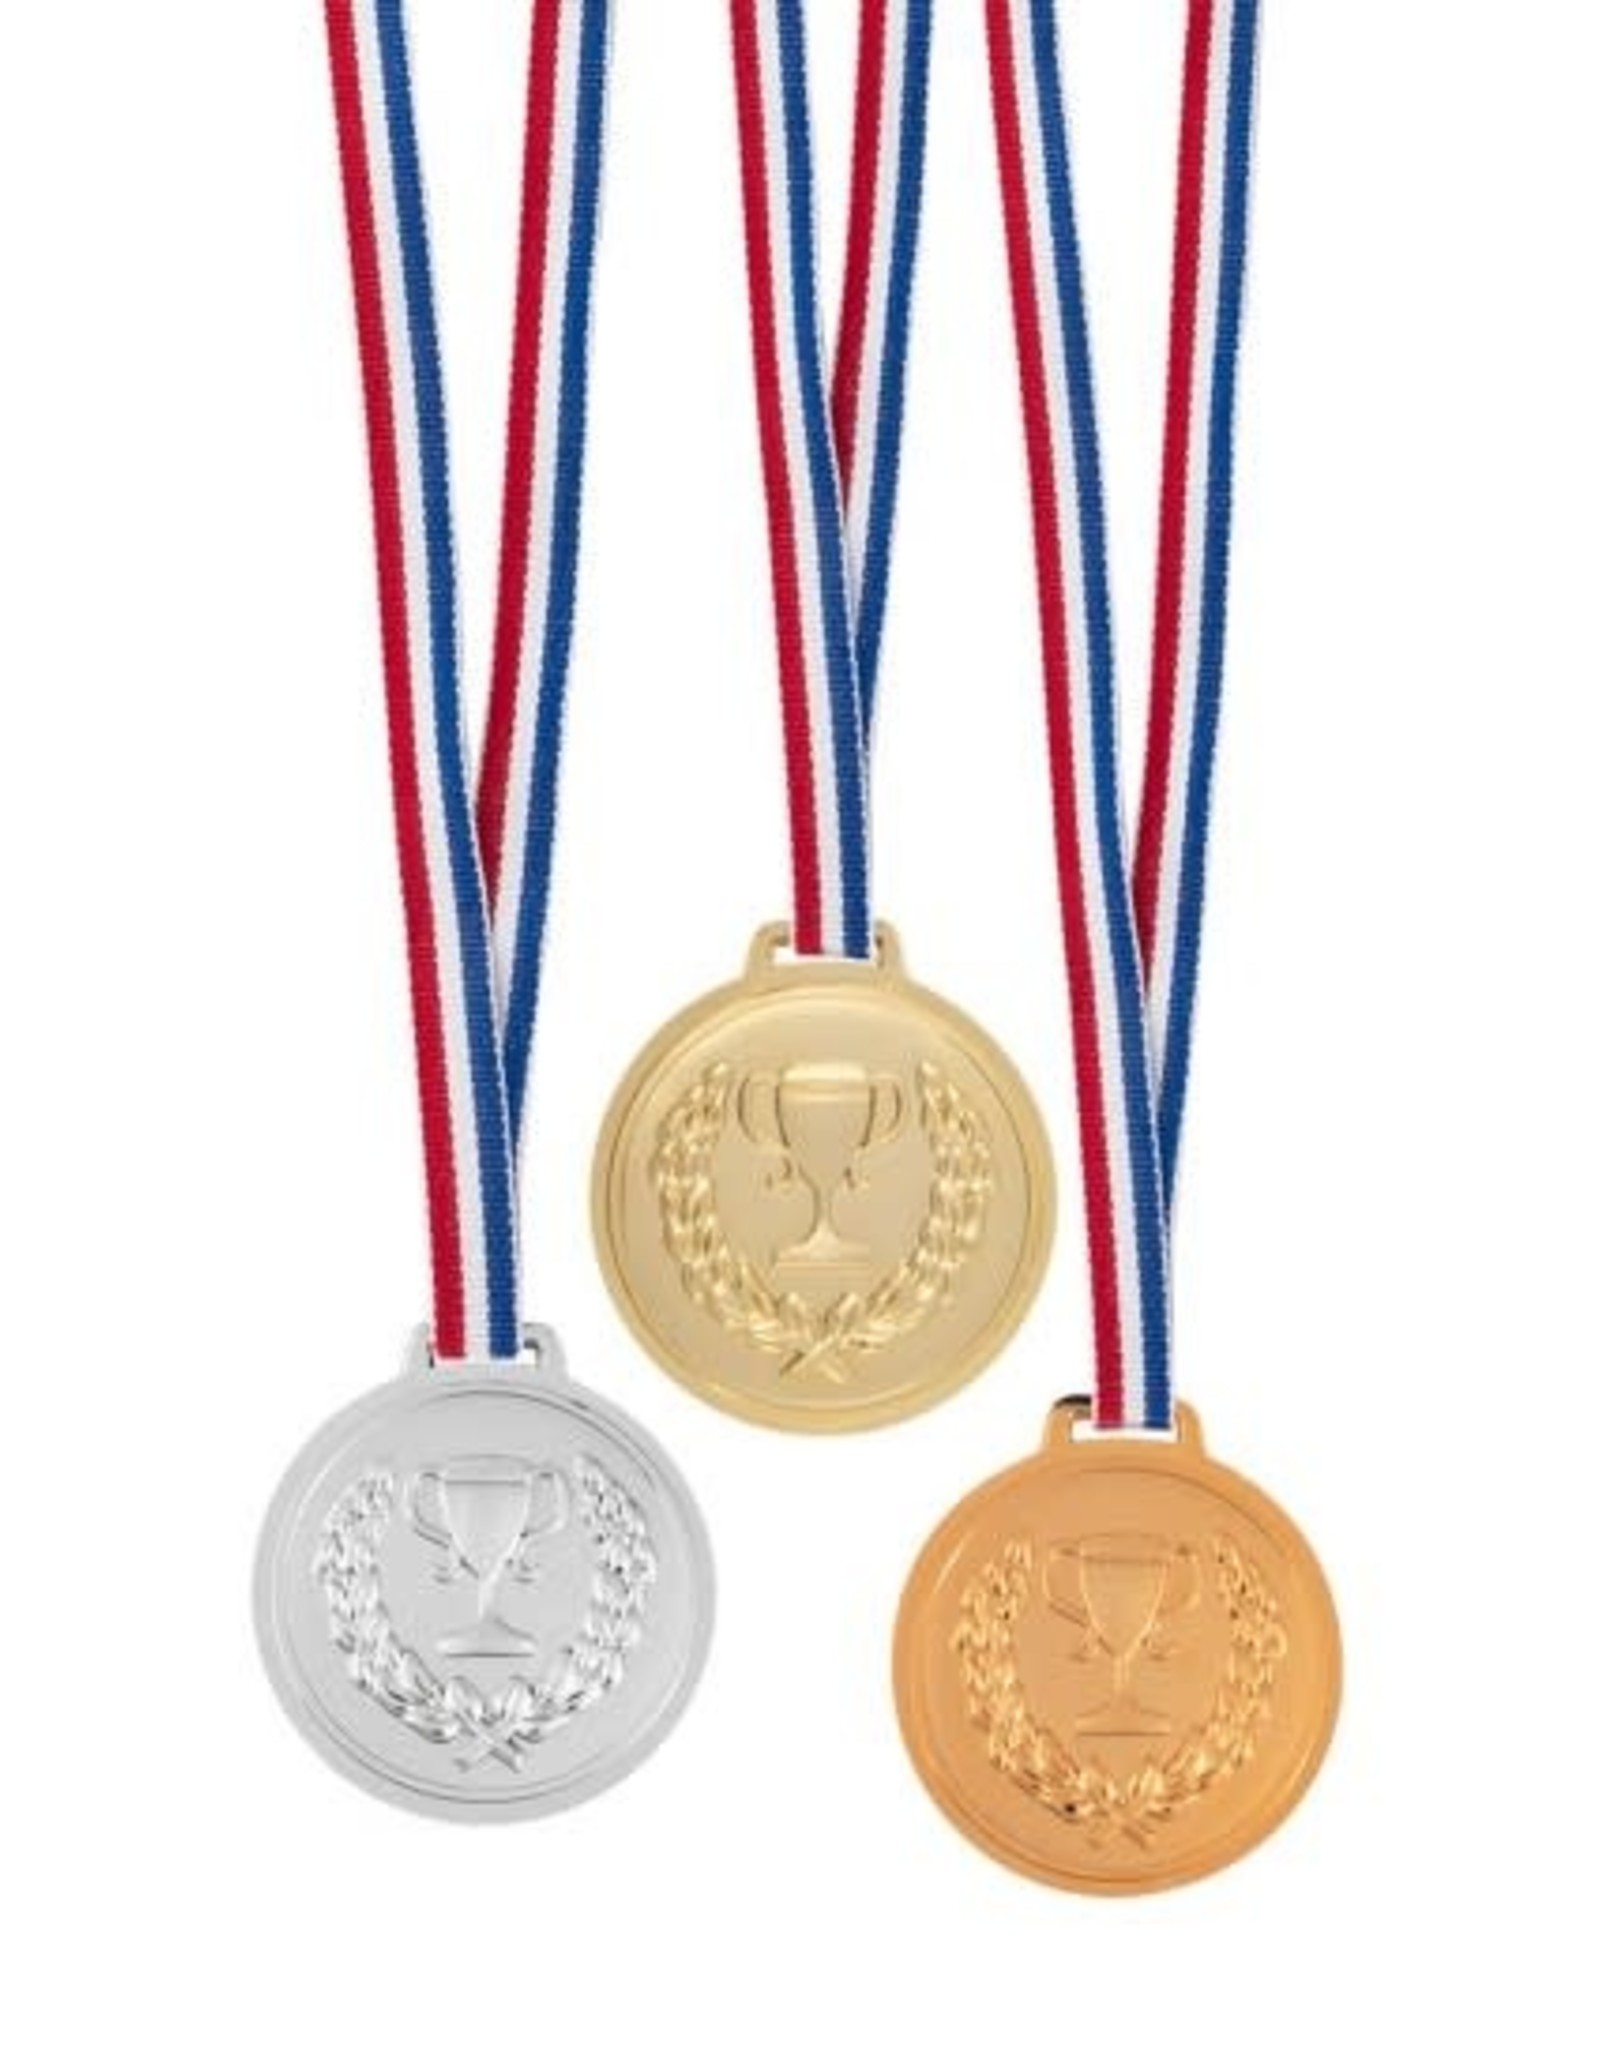 Aan boord Franje Bijna dood Set van 3 Medailles Goud, Zilver, Brons (Plastic) - De verkleedzolder, voor  al uw feestartikelen, accessoires, verhuur en verkoop van kleding,  feestkleding en kostuums voor uw themafeest of gala.